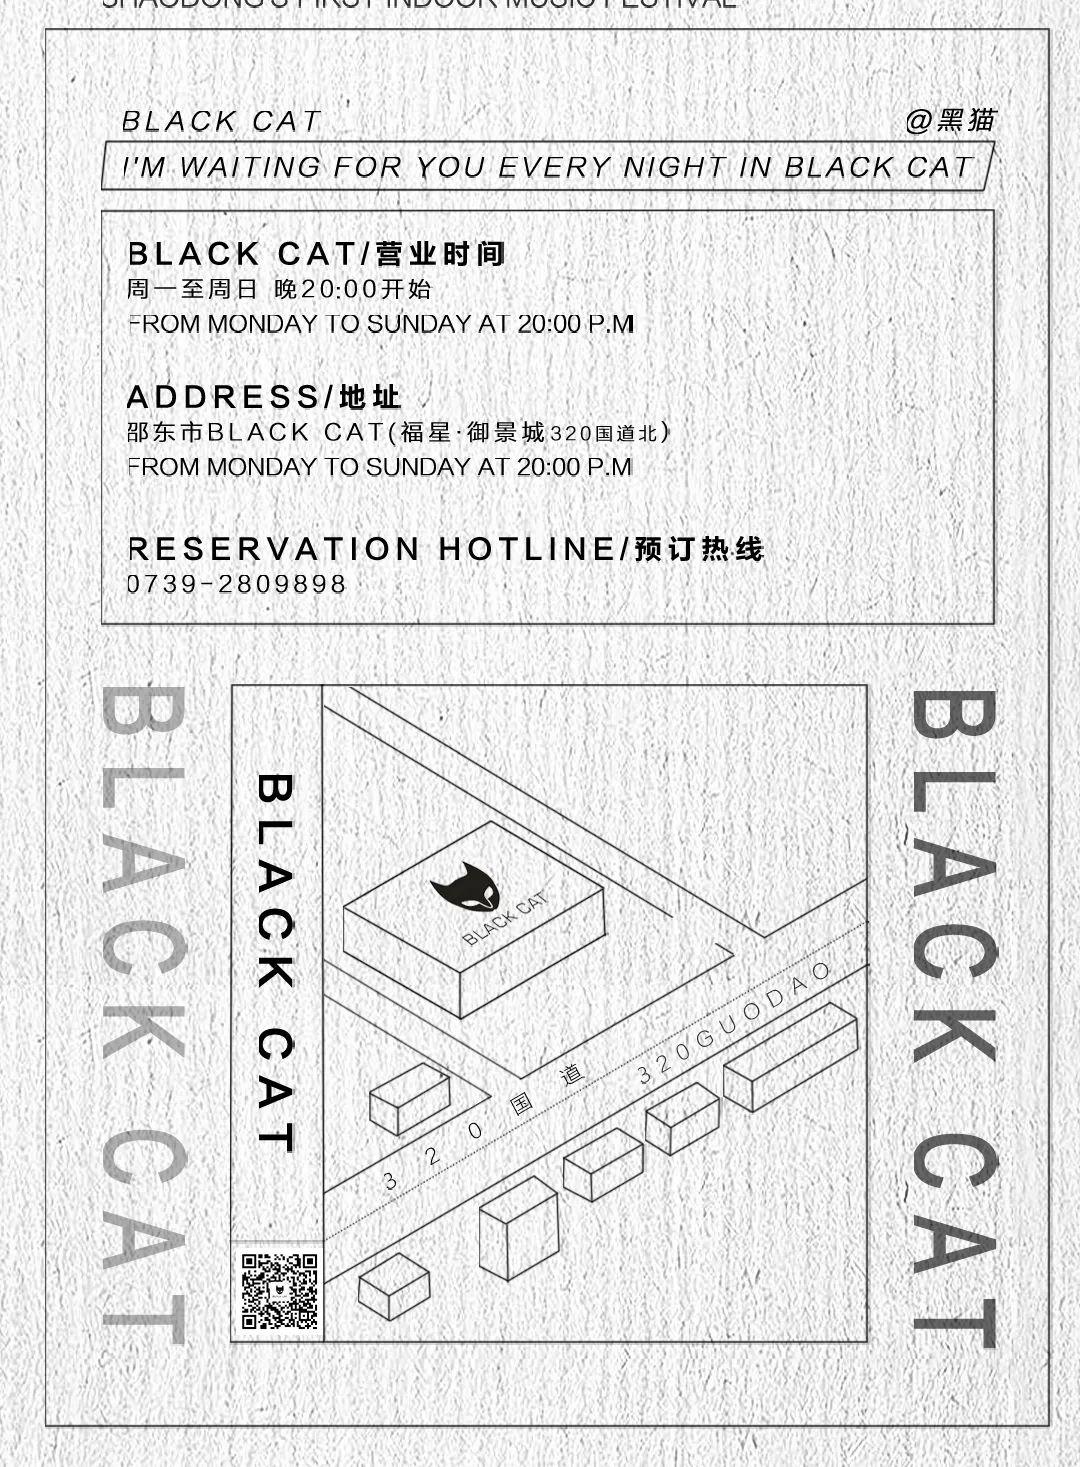 梦迪集团BLACK CAT邵东店丨10月25日#BLACK CAT联盟计划#-邵东黑猫酒吧/BLACK CAT CLUB